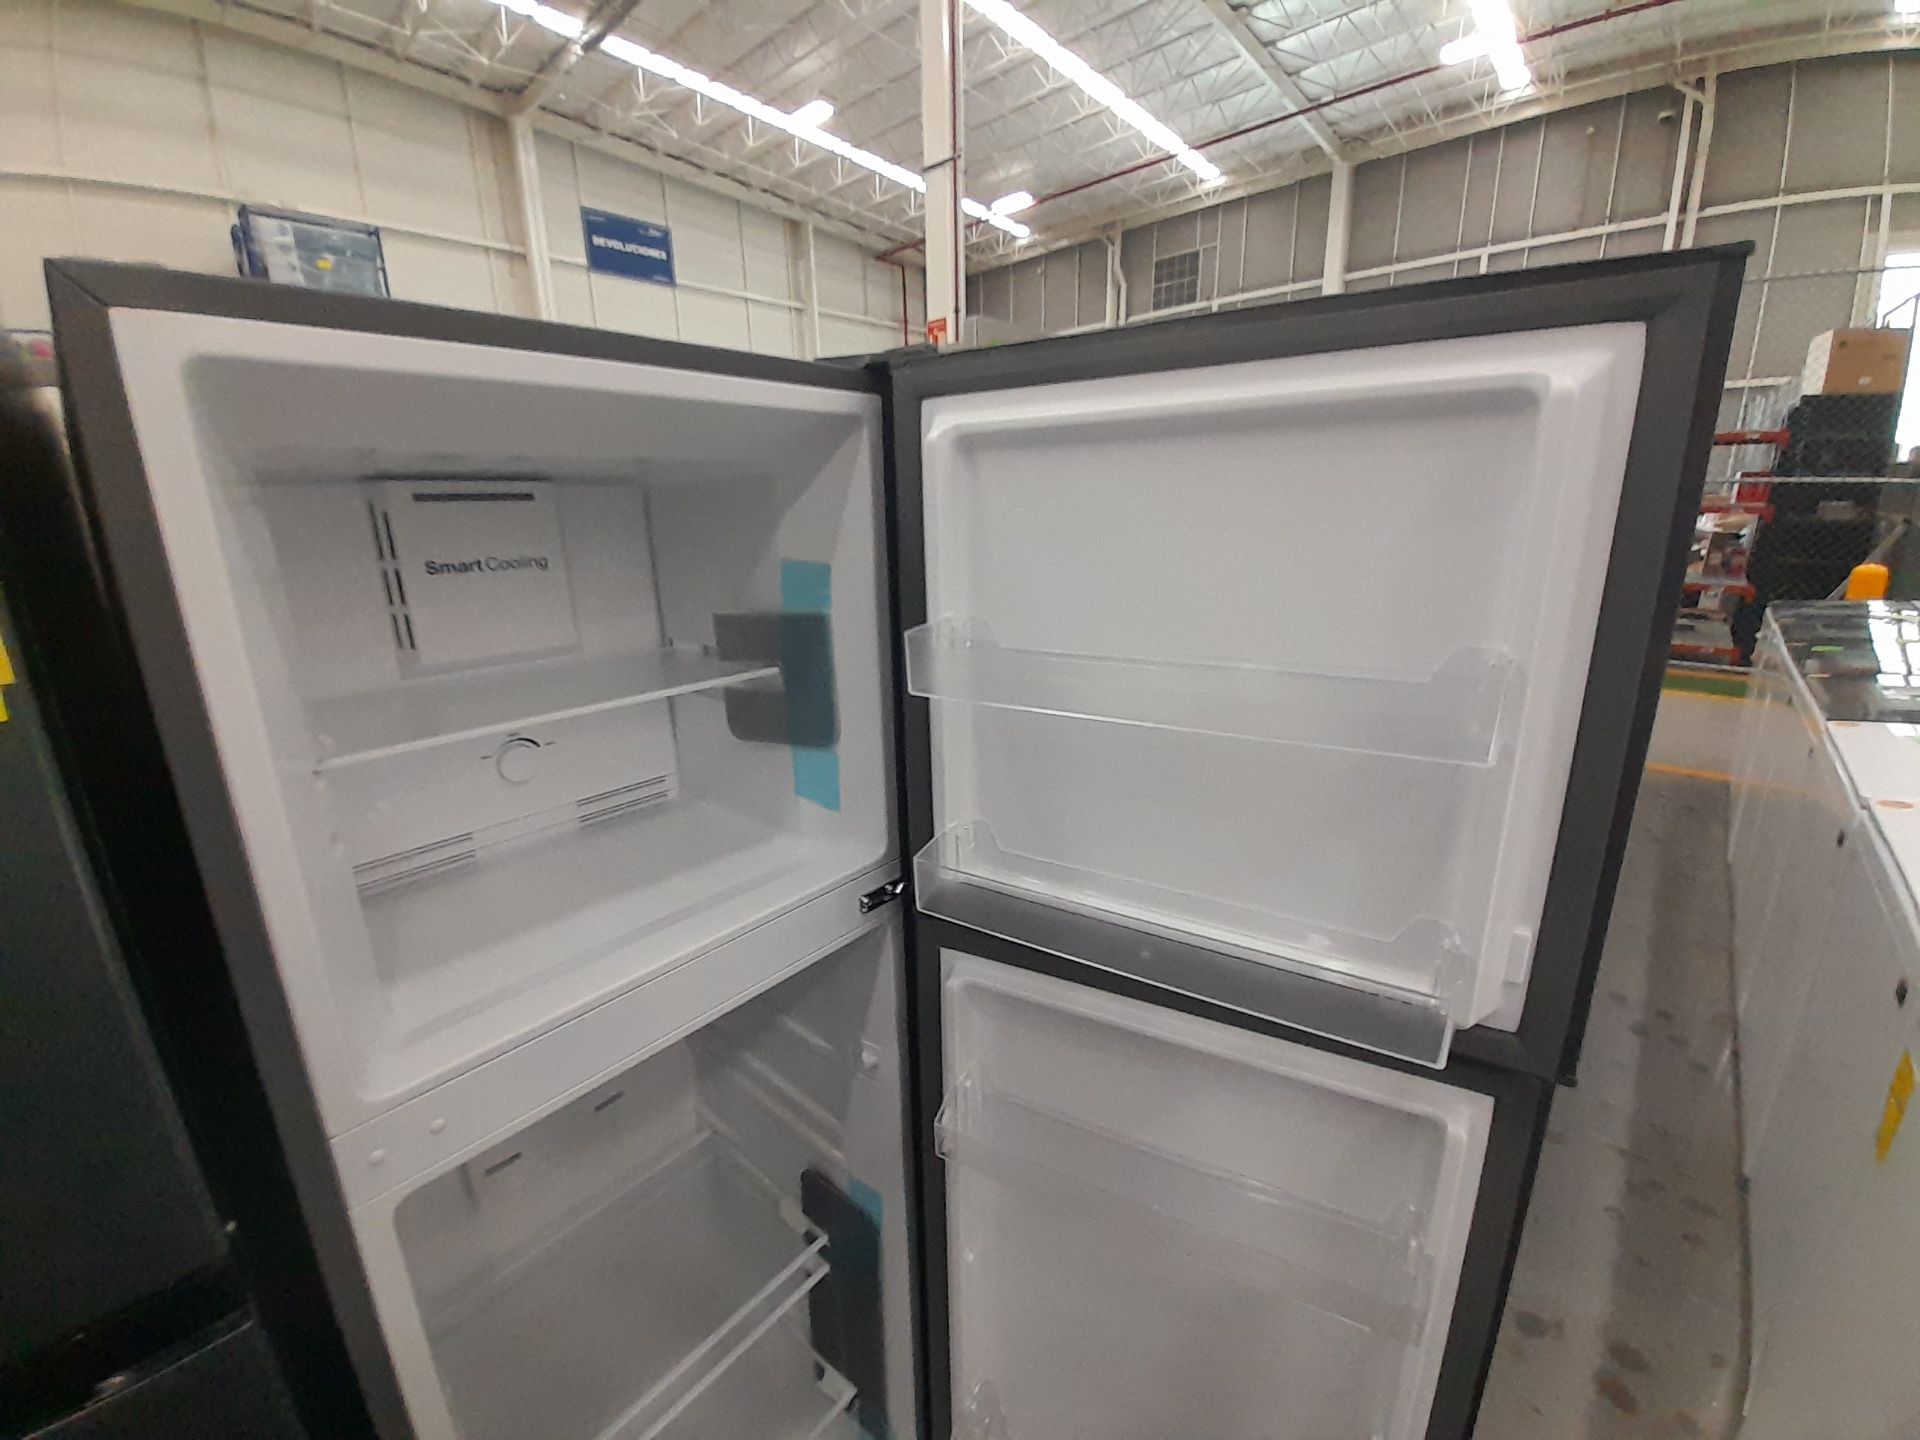 Lote de 2 refrigeradores contiene: 1 Refrigerador Marca WINIA, Modelo WRT9000AMMX, Color GRIS; - Image 4 of 8